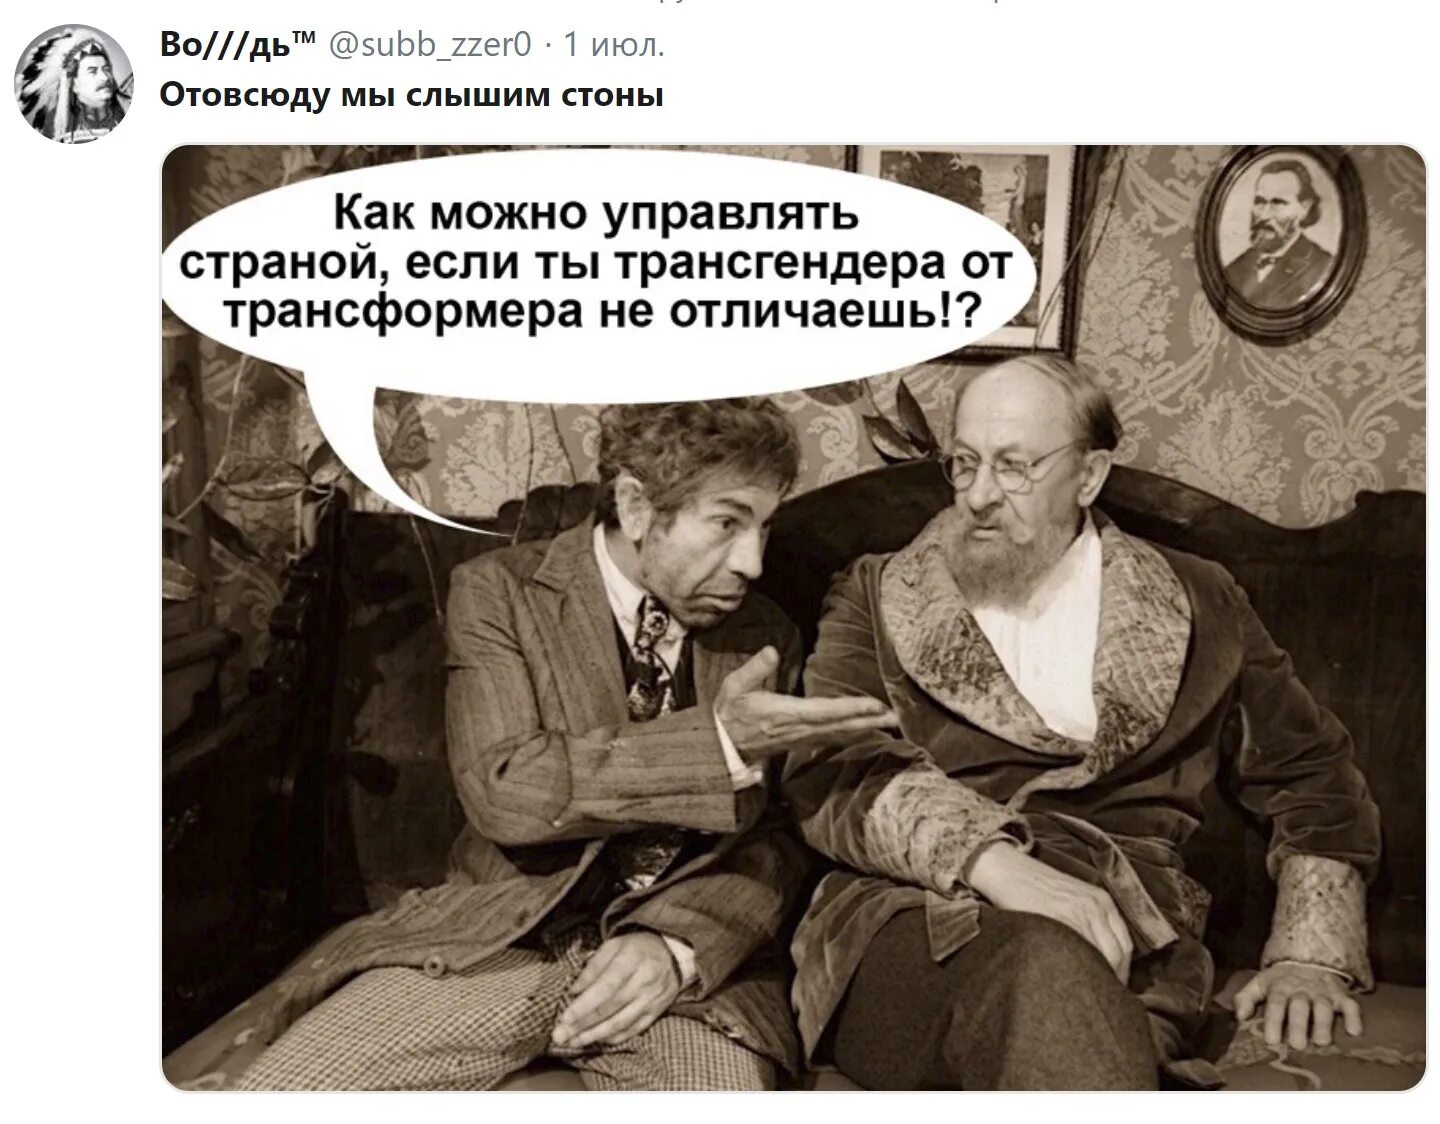 Слышит стоны. Политический юмор. Политика юмор. Политический юмор Украина. Картинки политика юмор.